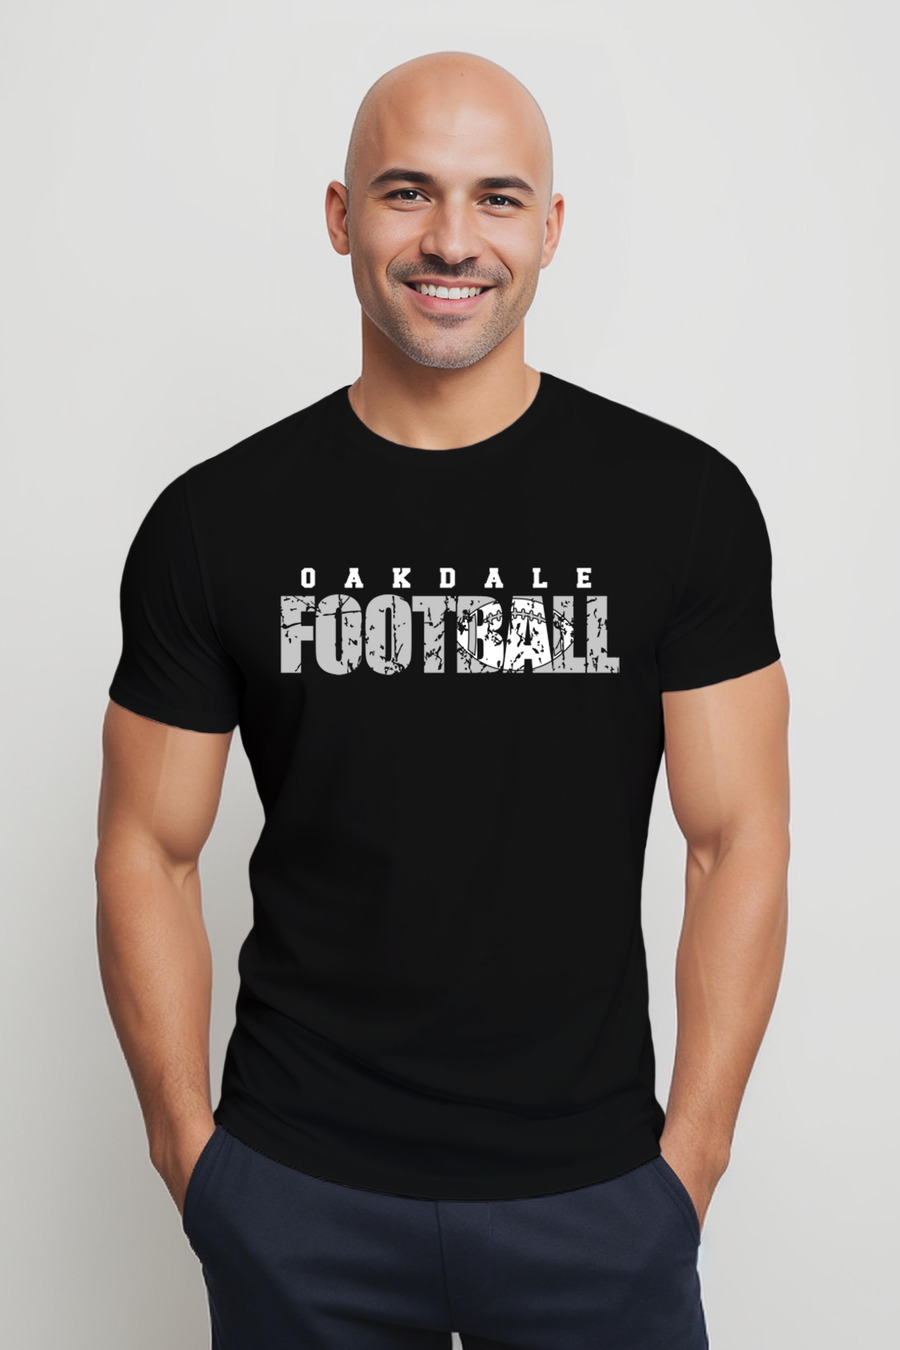 Oakdale Football- Distressed Design- Black Shirt (OMS)